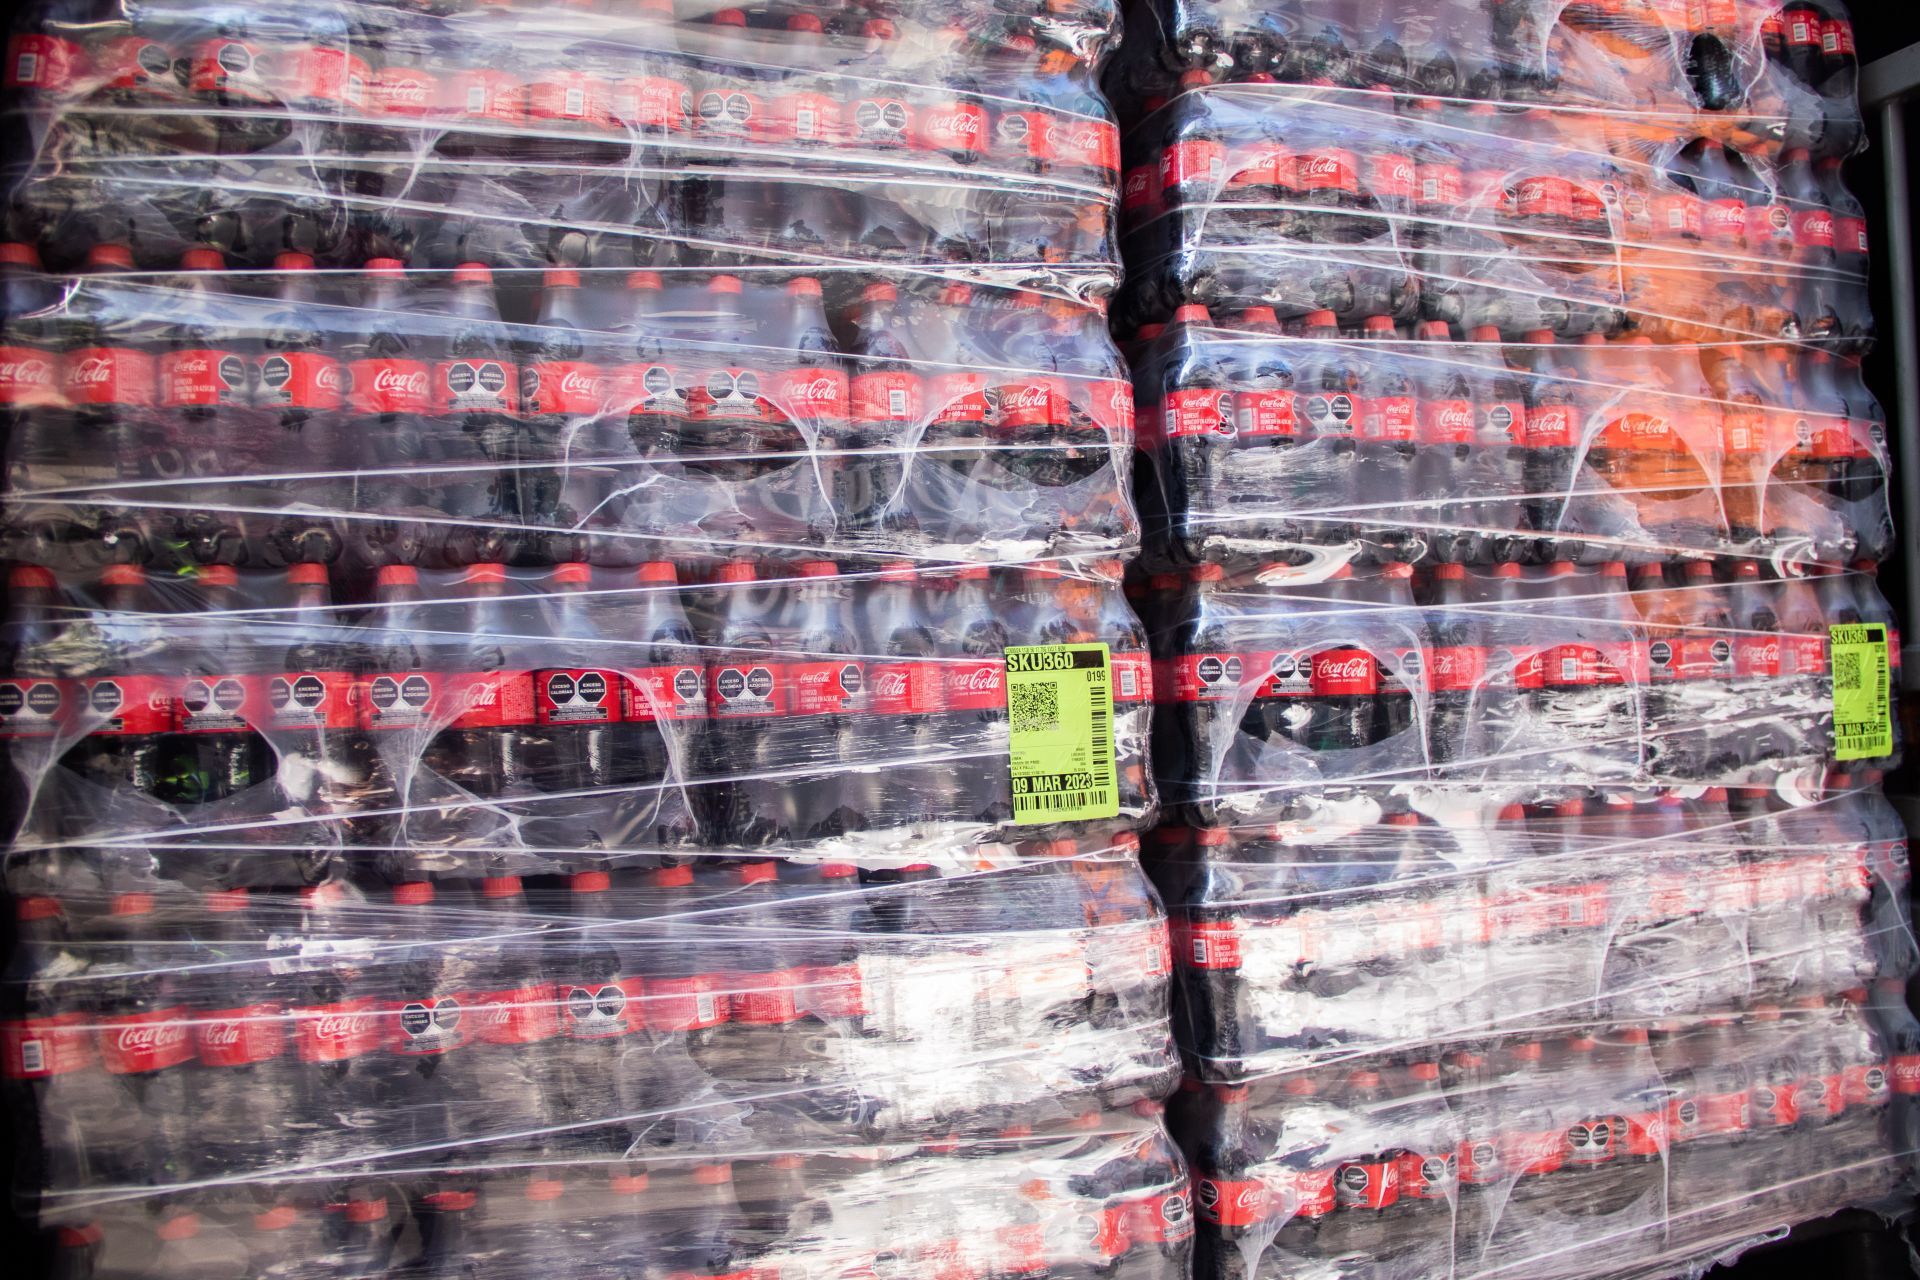 Alrededor de 2 mil 340 litros de Coca-cola pirata fueron descubiertos por la Fiscalía capitalina en Iztapalapa.